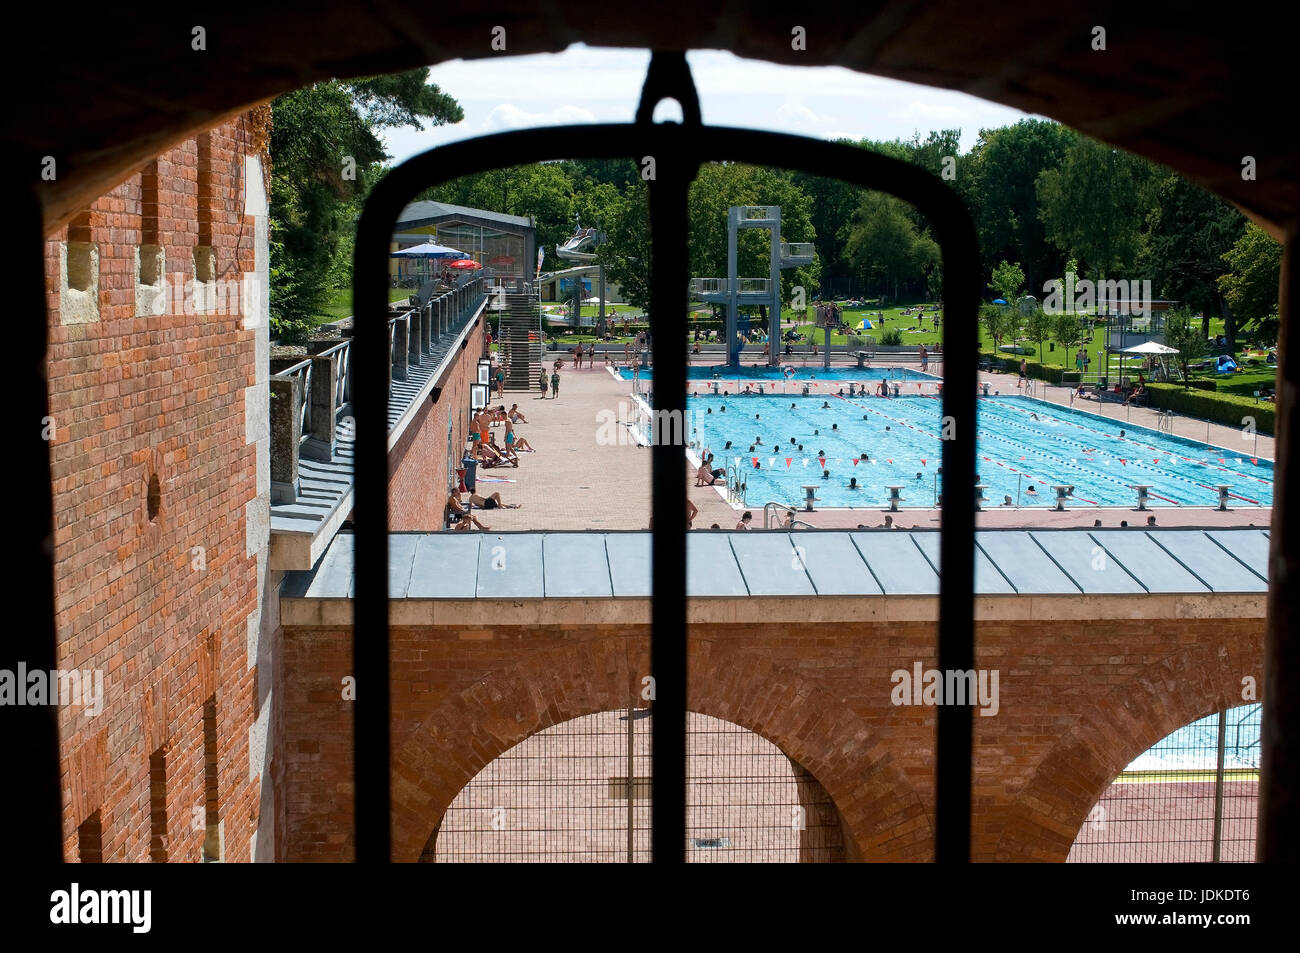 En Europa, Alemania, Baviera, Ingolstadt, piscina al aire libre por el casco antiguo, Europa, Alemania, Bayern, Freibad an der alten Stadtmauer Foto de stock